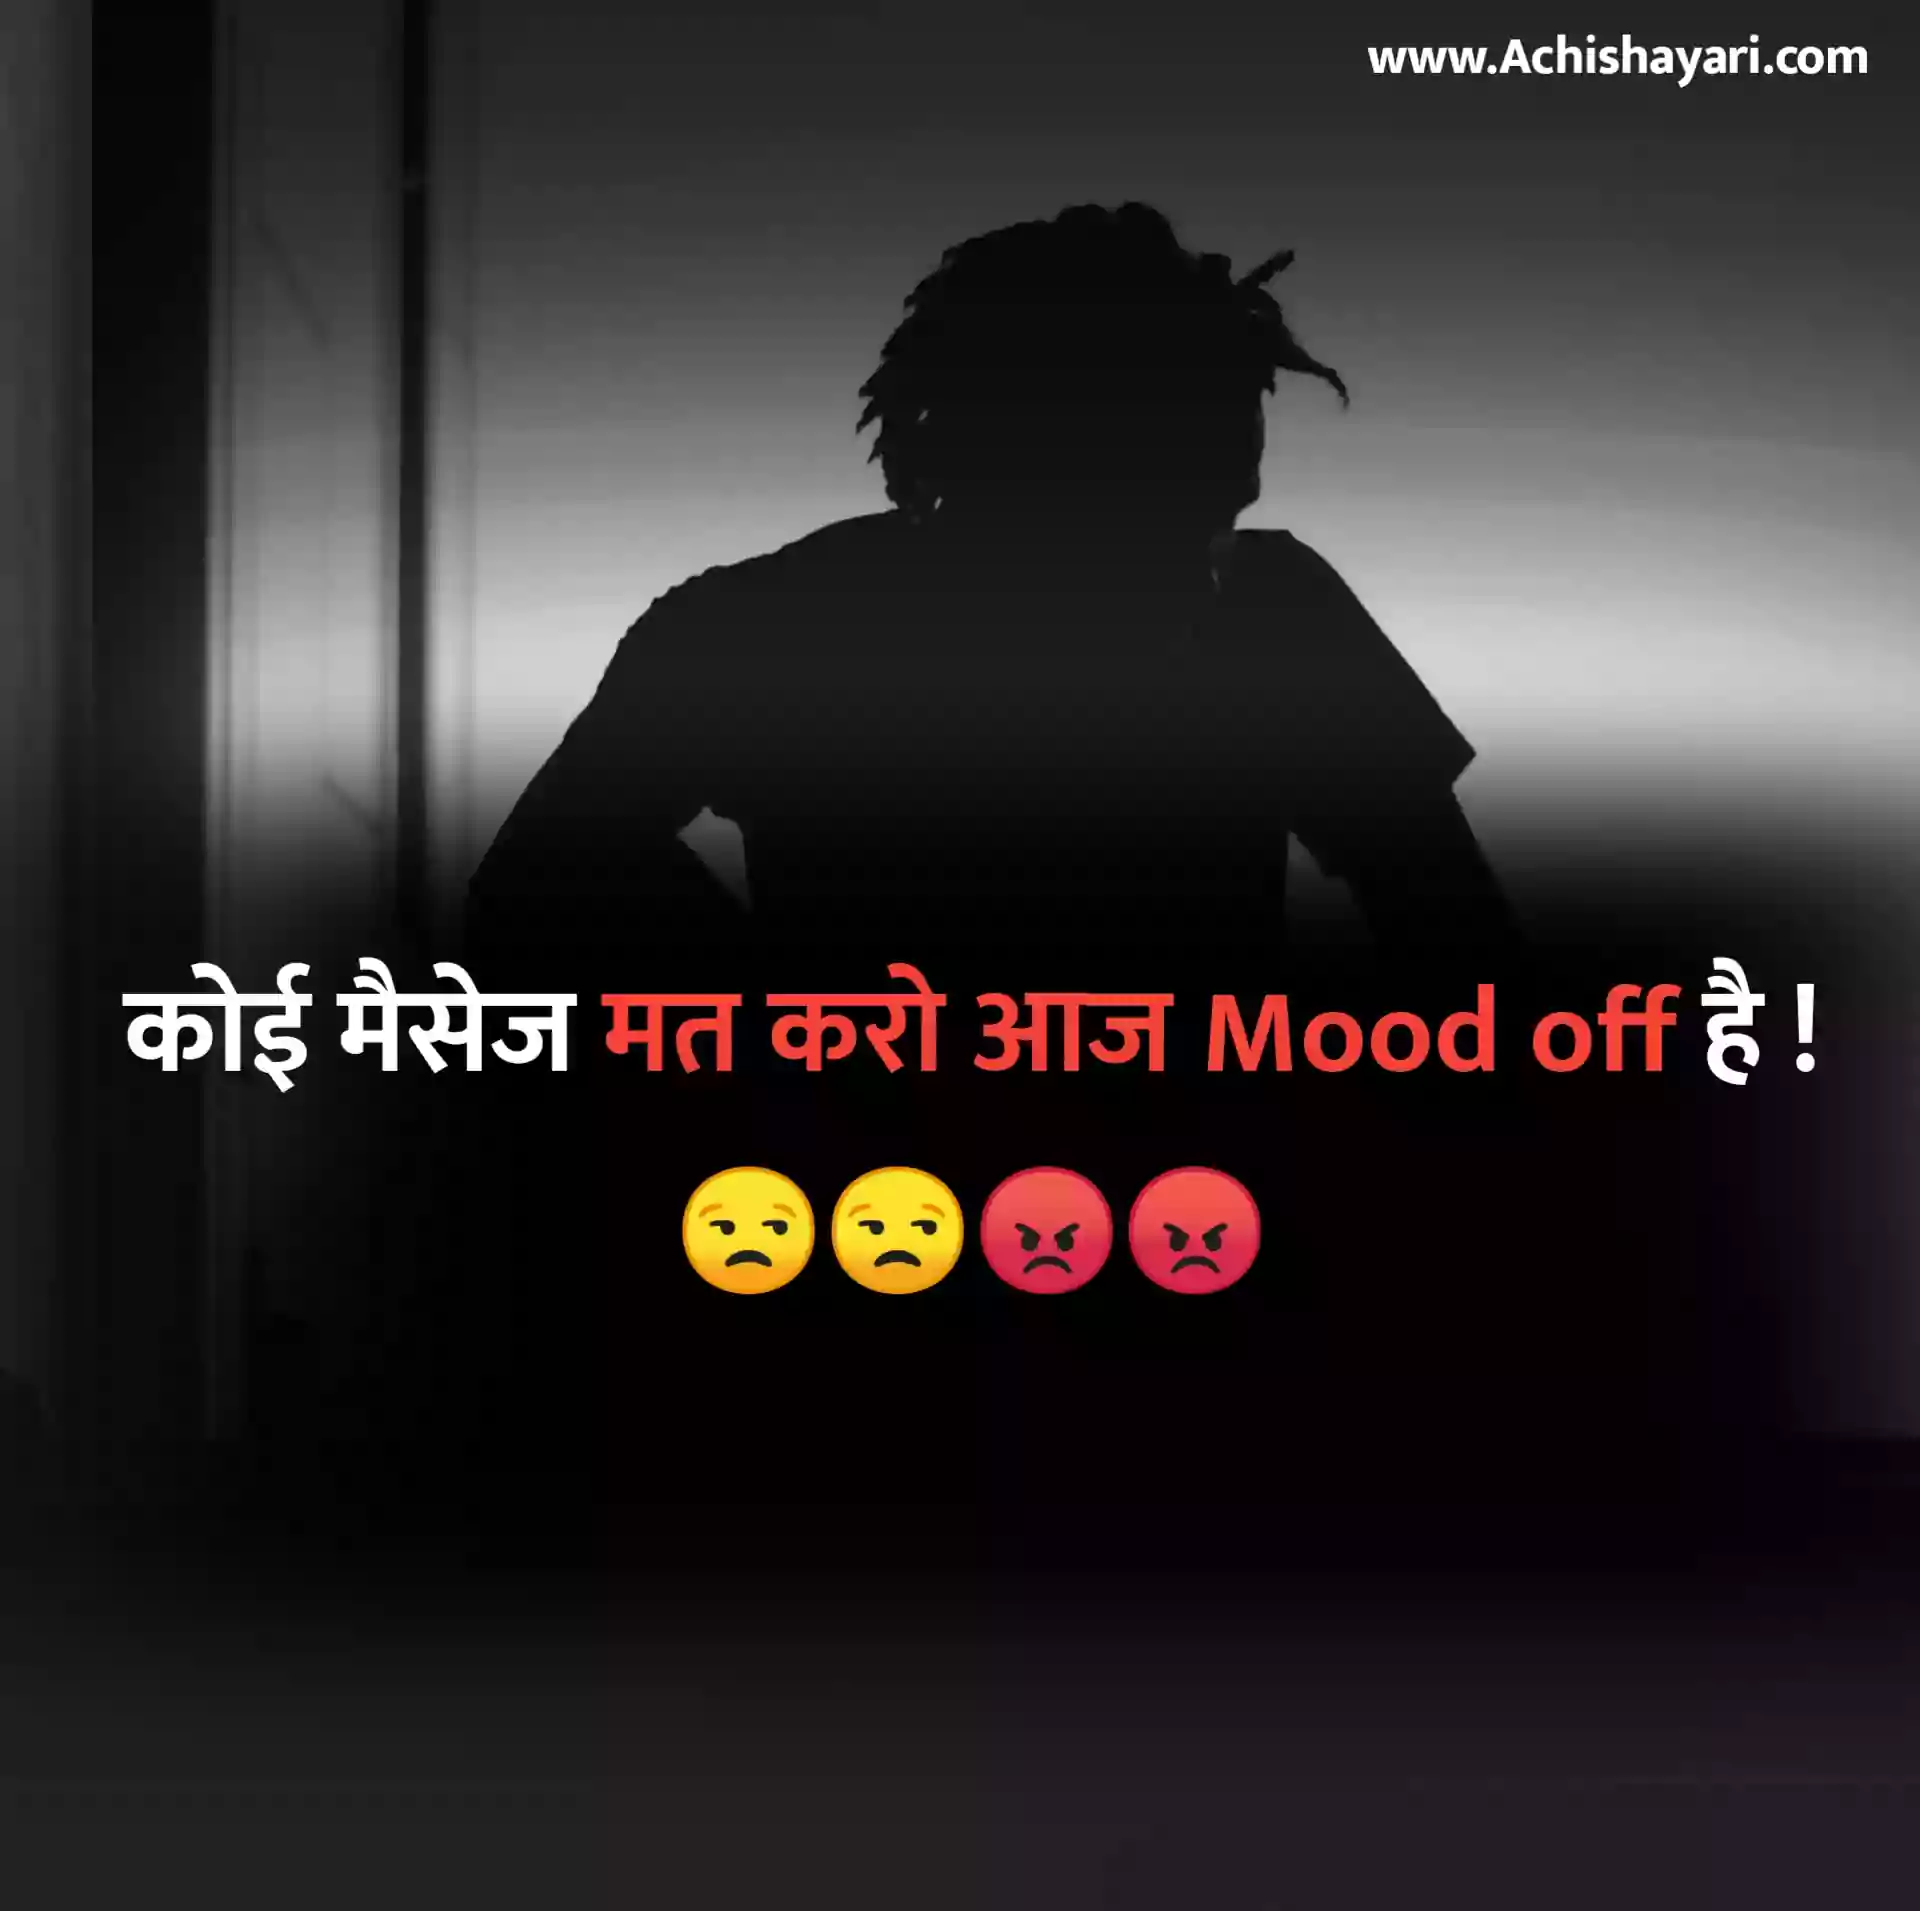 Mood off Image Hindi